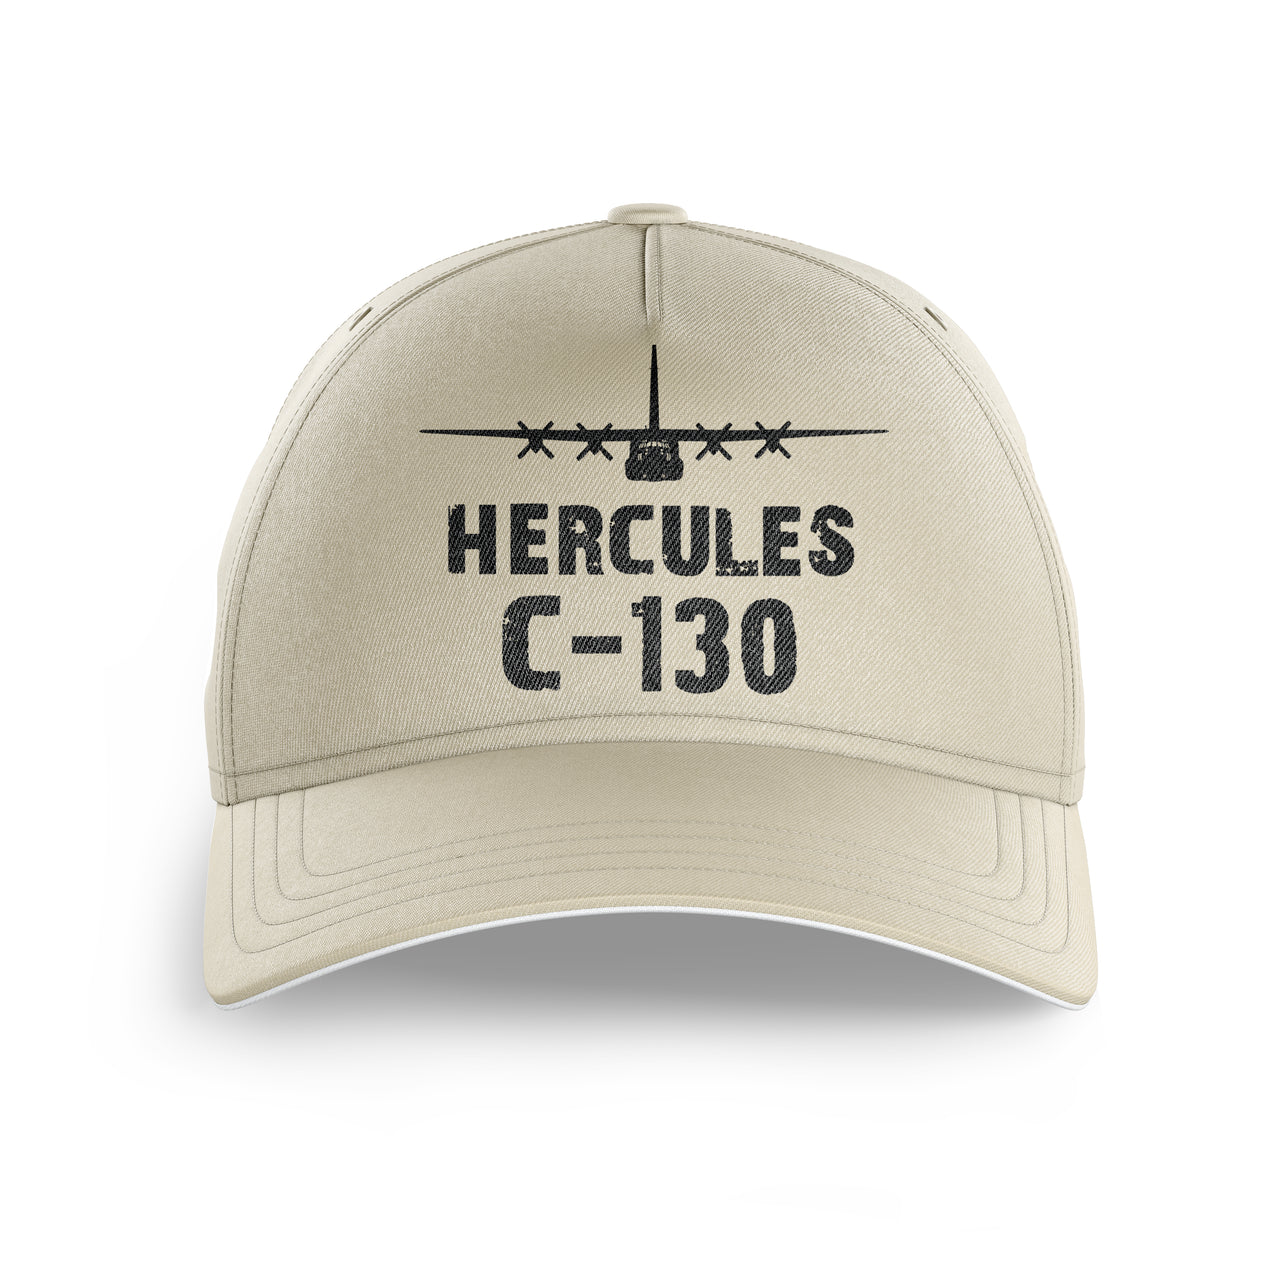 Hercules C-130 & Plane Printed Hats